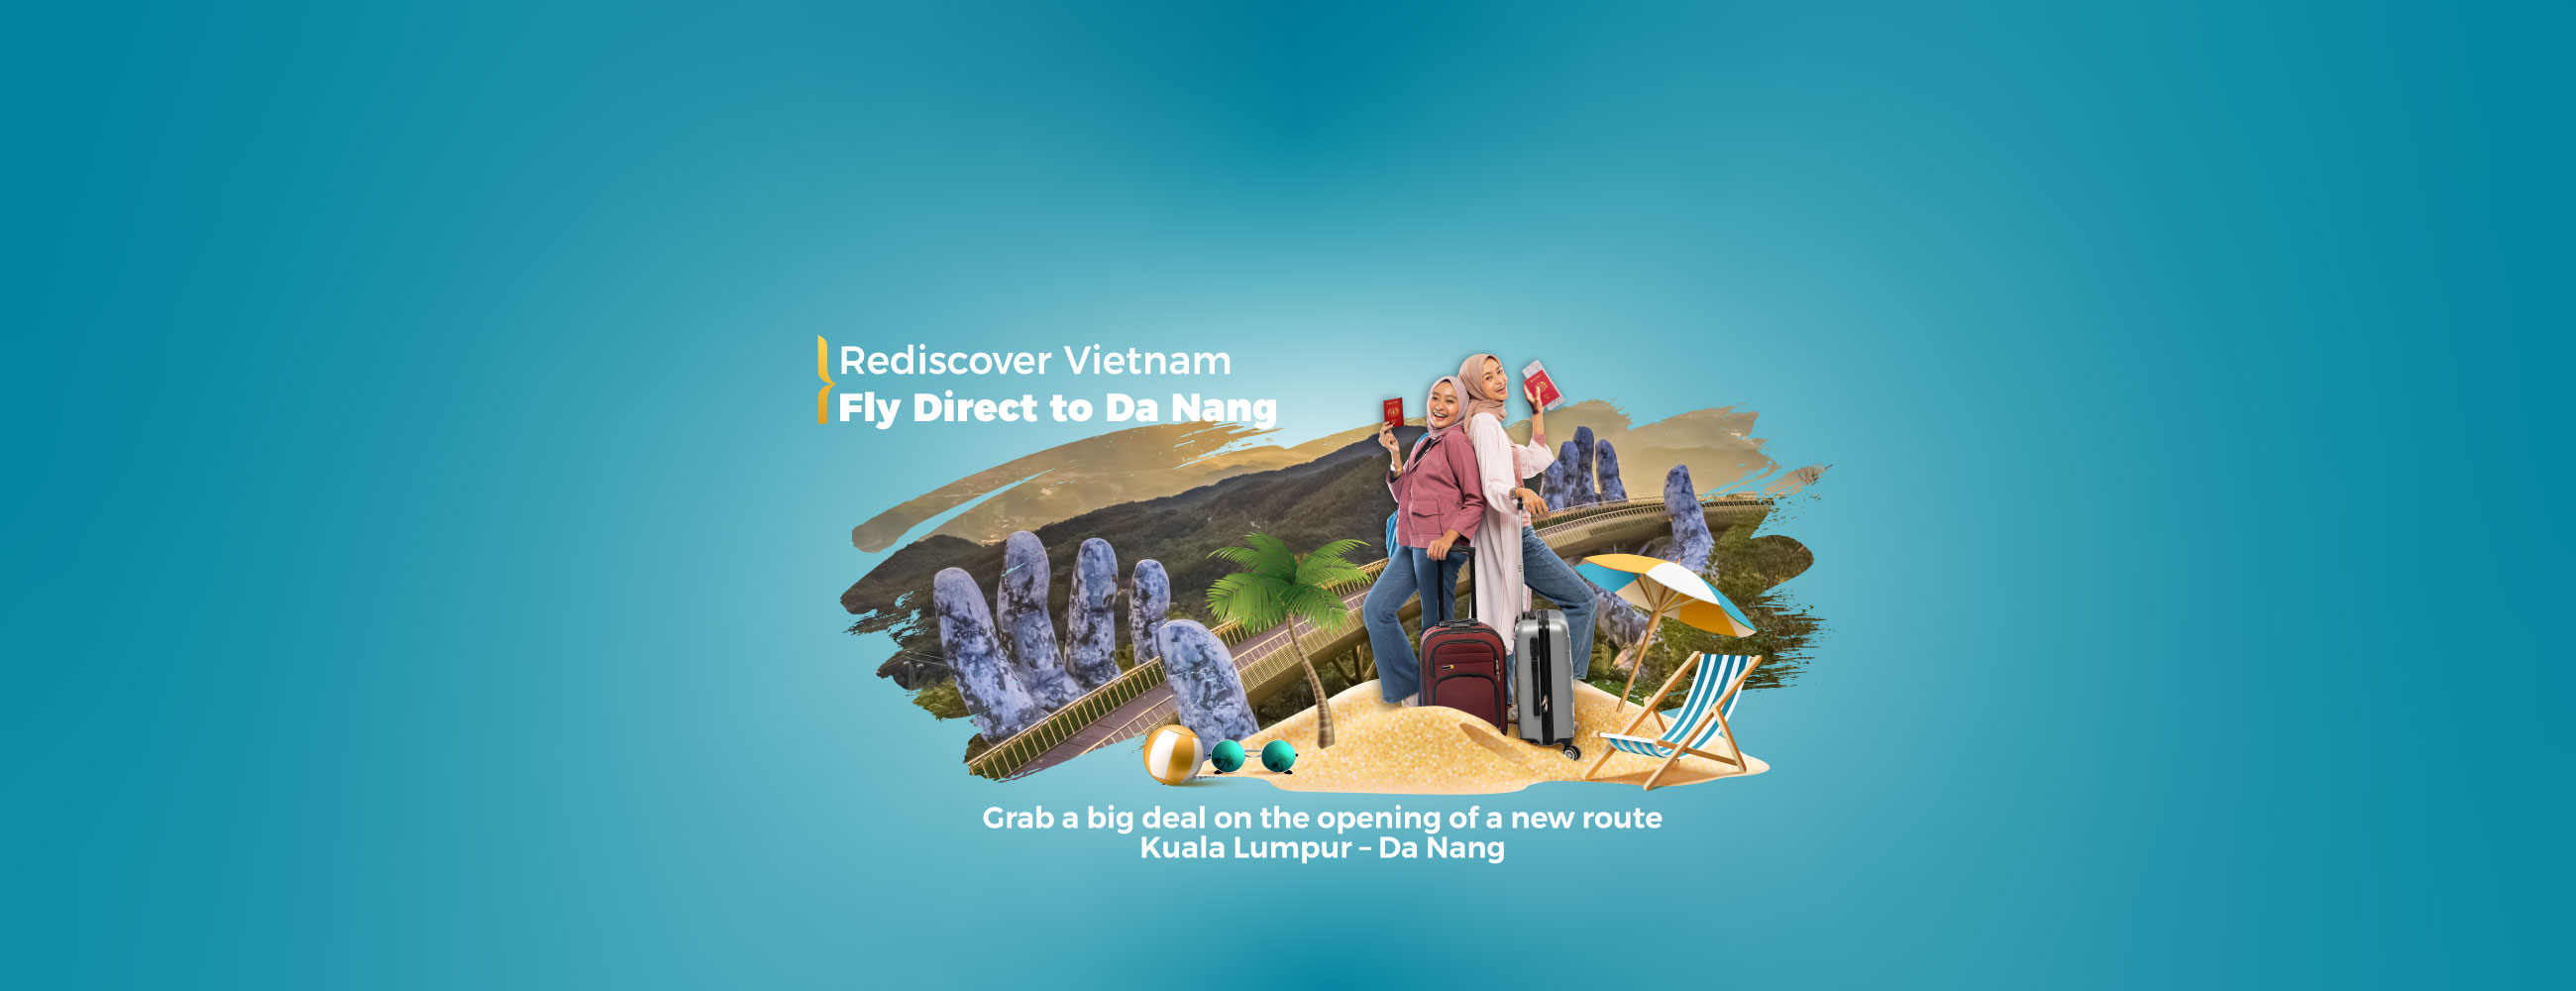 Mua vé máy bay sớm, săn vé máy bay giá rẻ cùng Vietnam Airlines